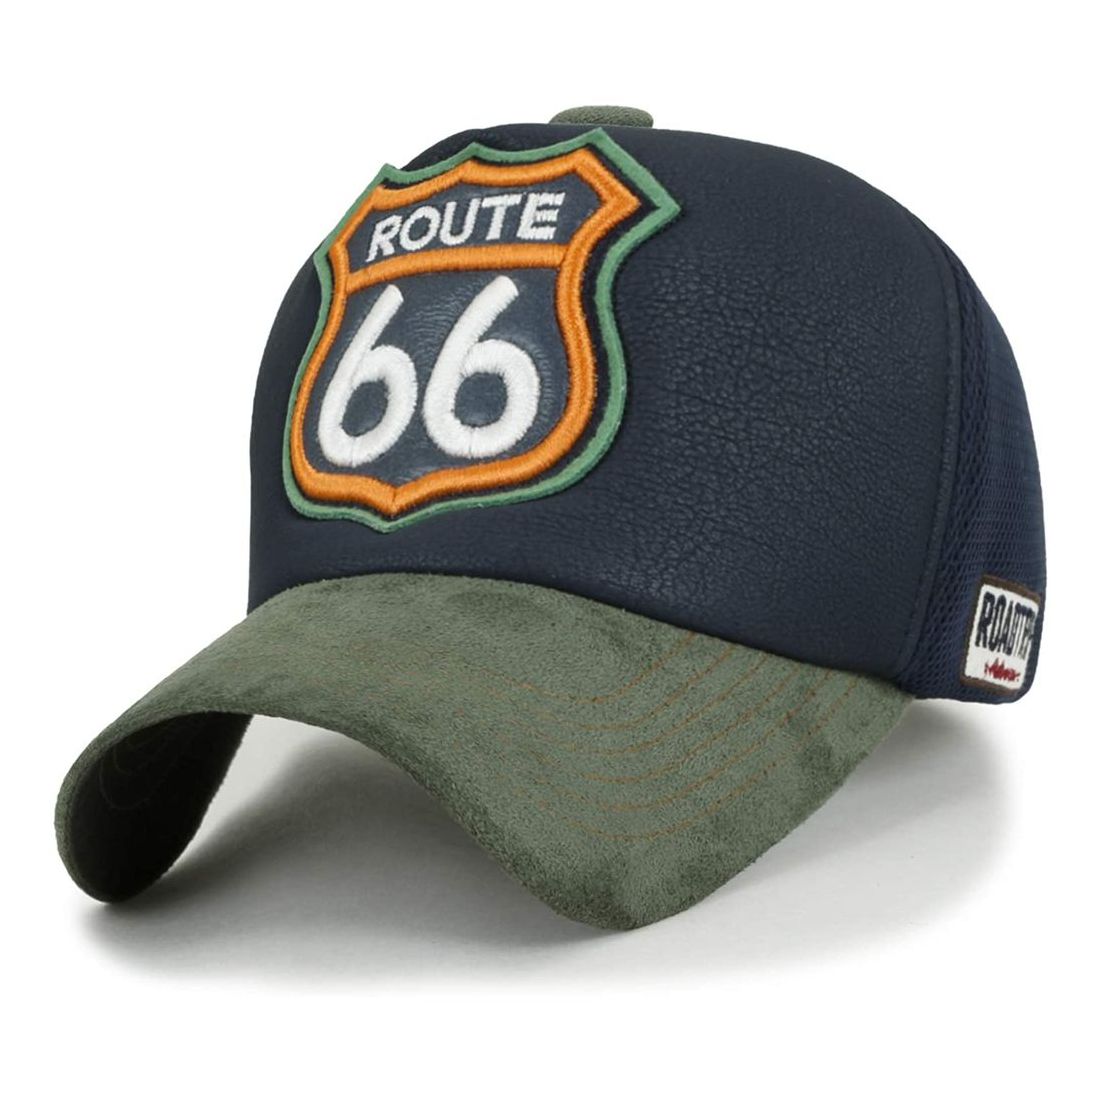 قبعة بيسبول مطرزة بعبارة 66 روت من نسيج شبكي إصدار محدود بلون أخضر من إيليلي